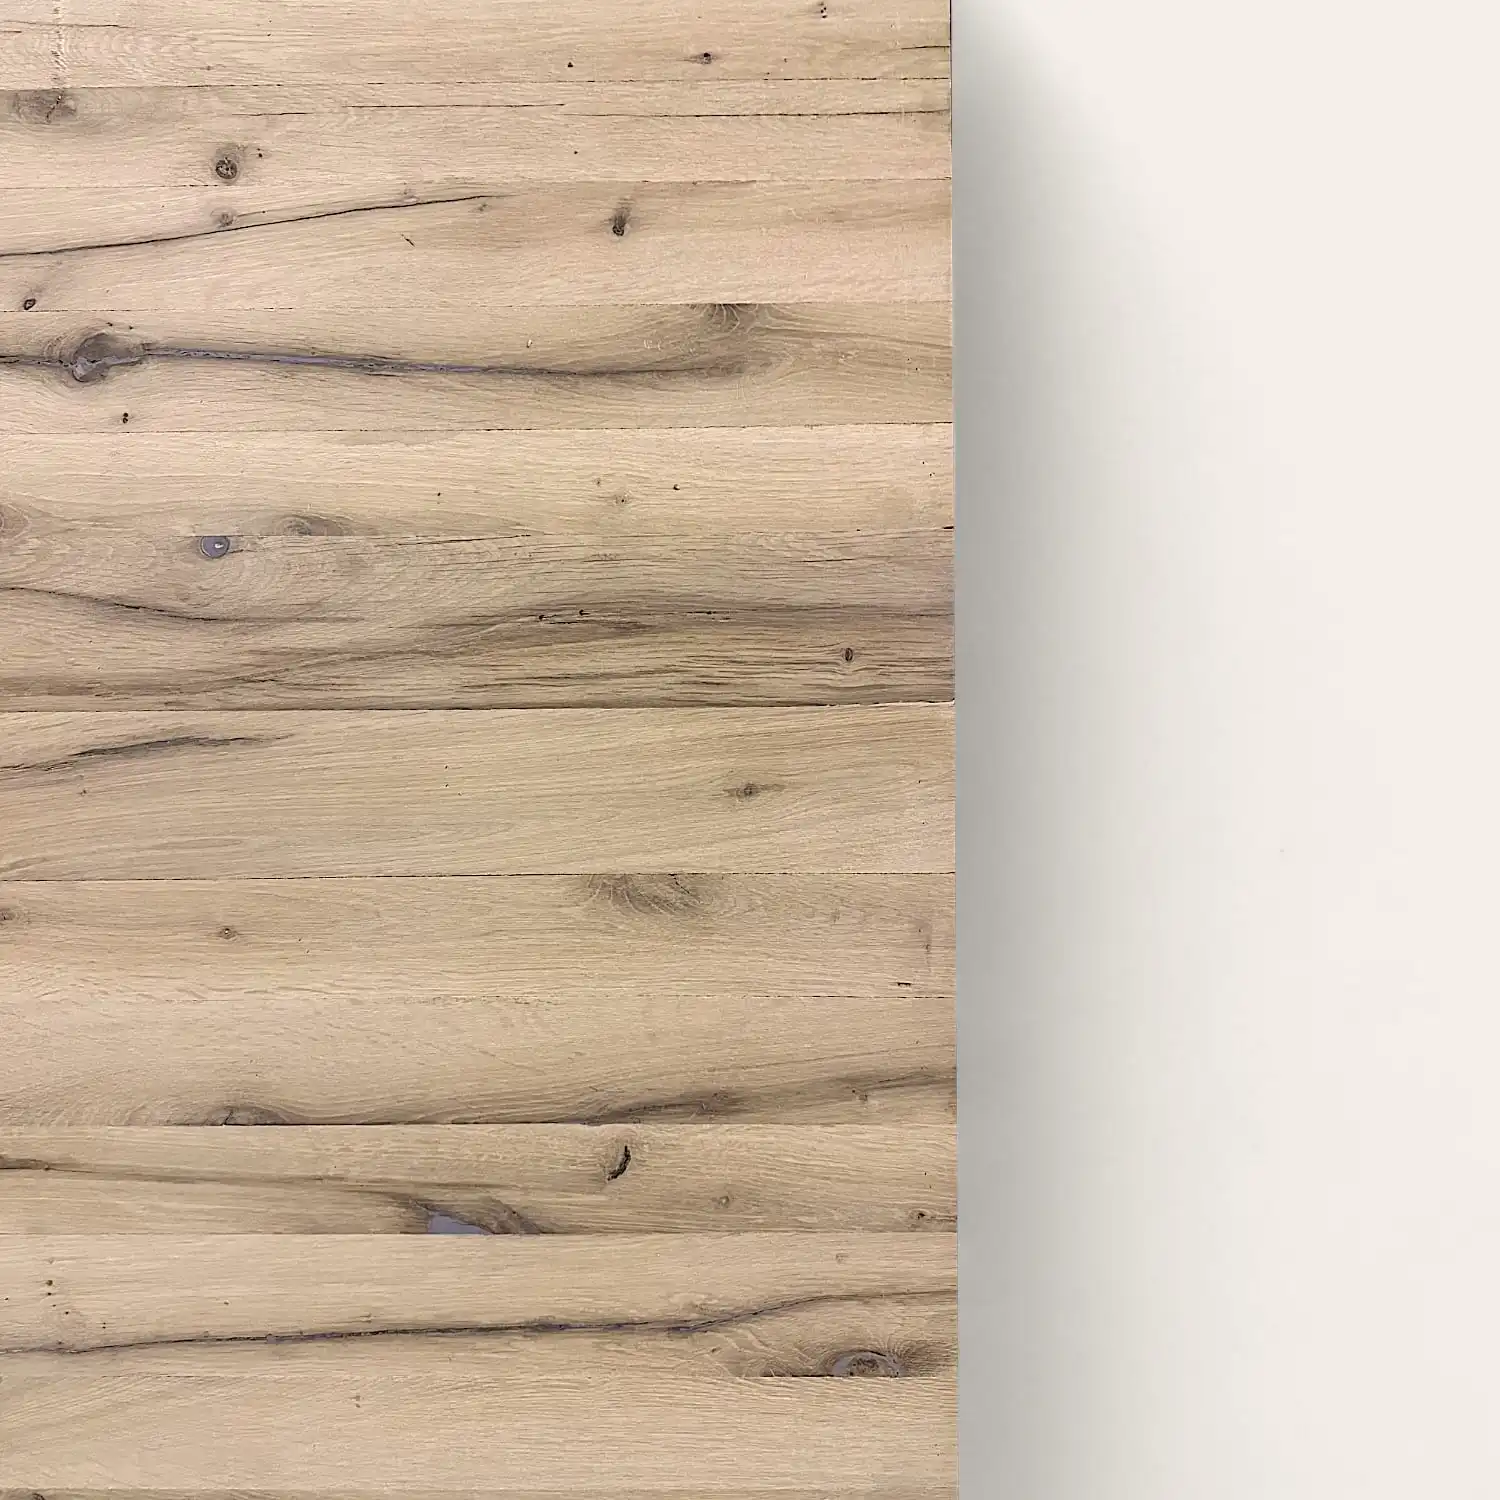  Planchers en bois clair passant à un espace blanc sur le côté droit de l'image comportant un panneau 5 plis. 